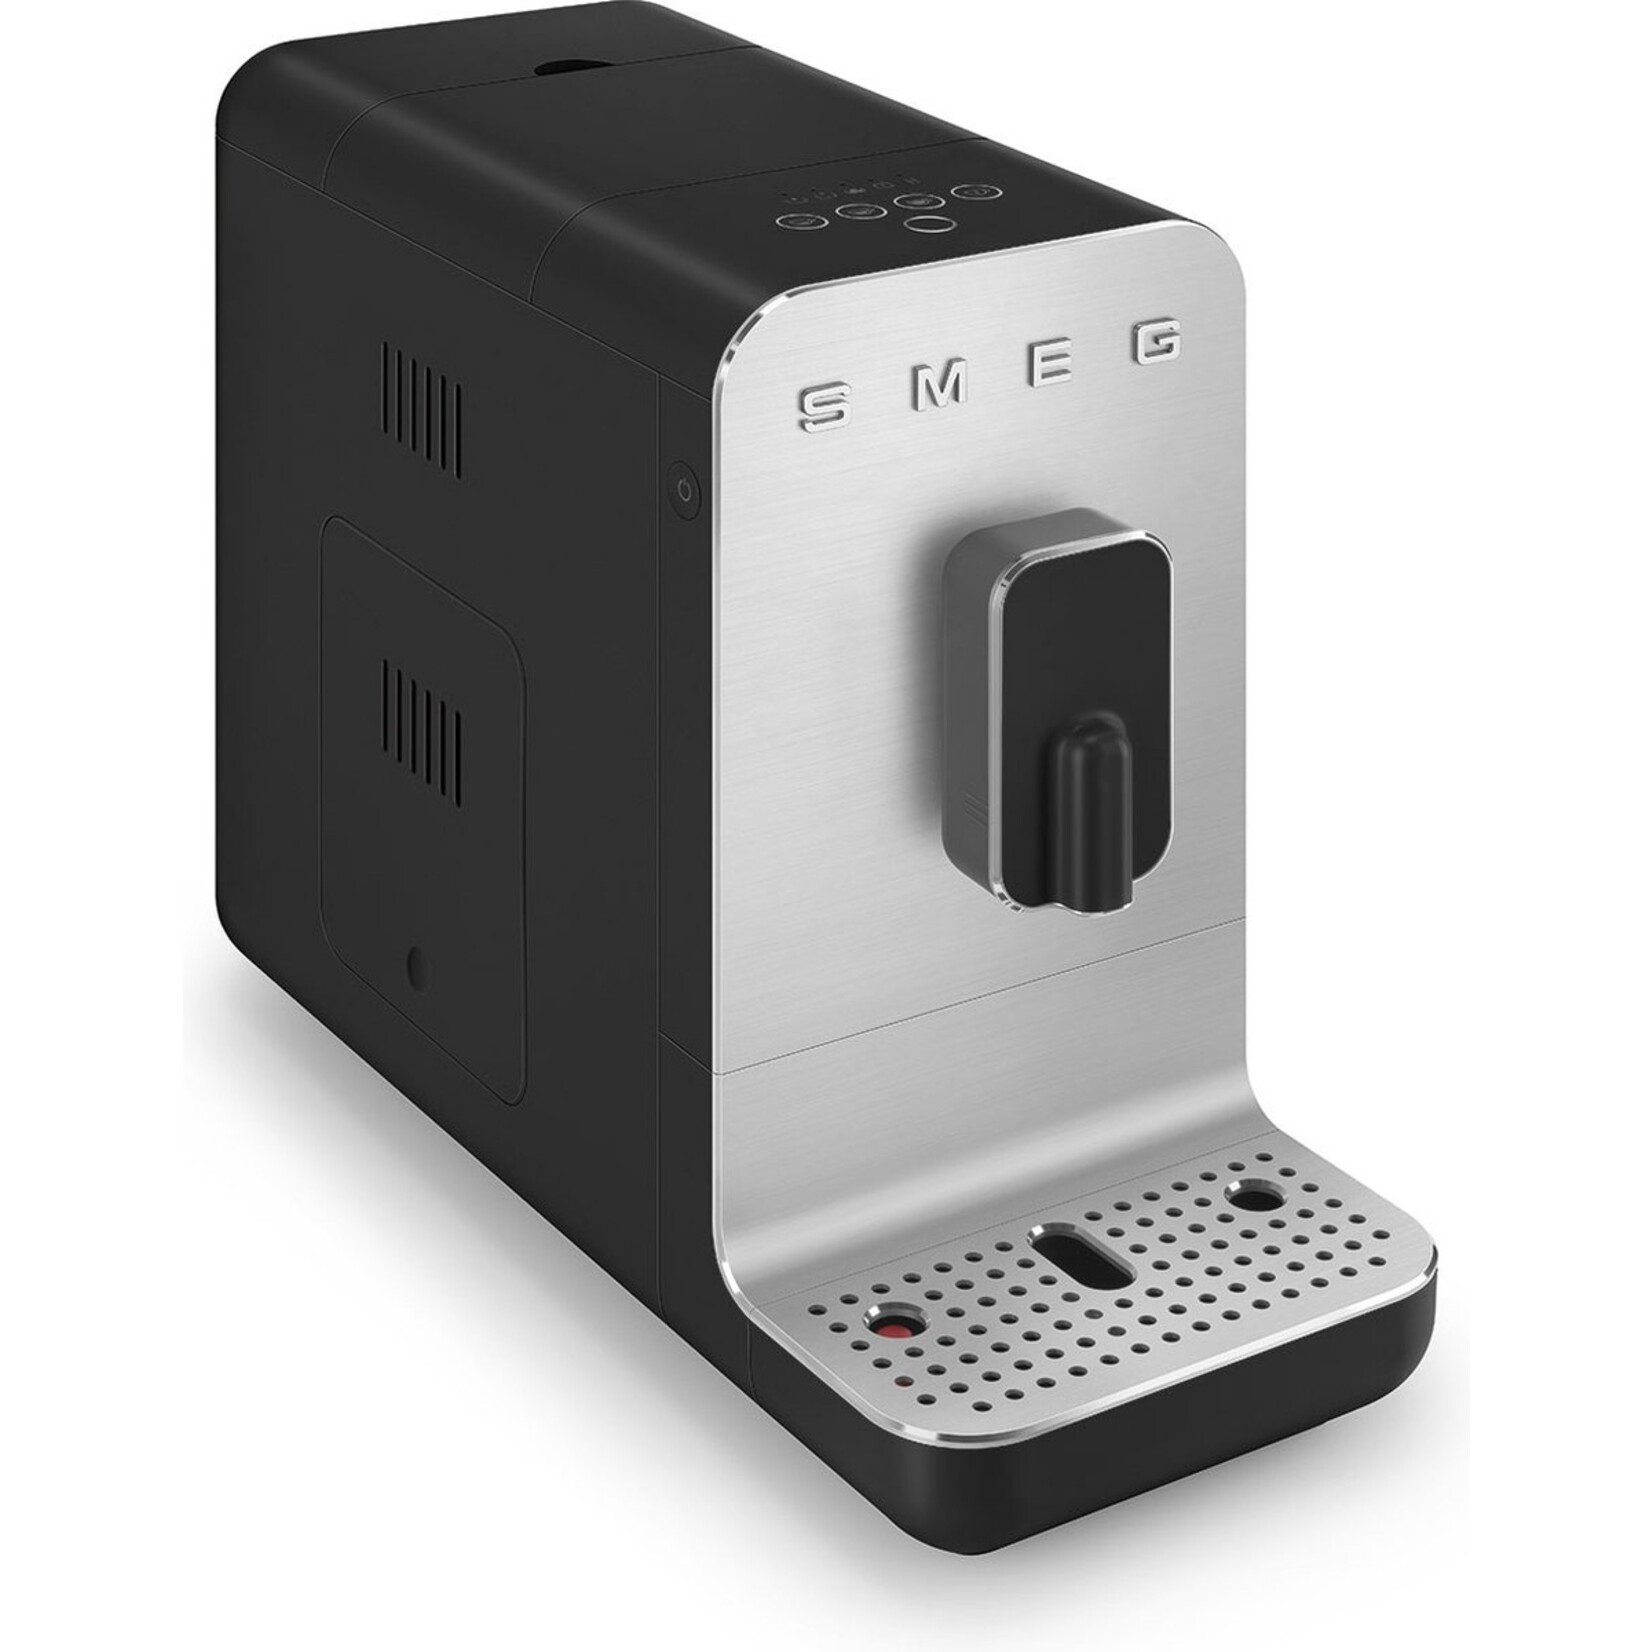 SMEG SMEG Espressomachine, mat zwart, volautomatisch, BCC11BLMEU